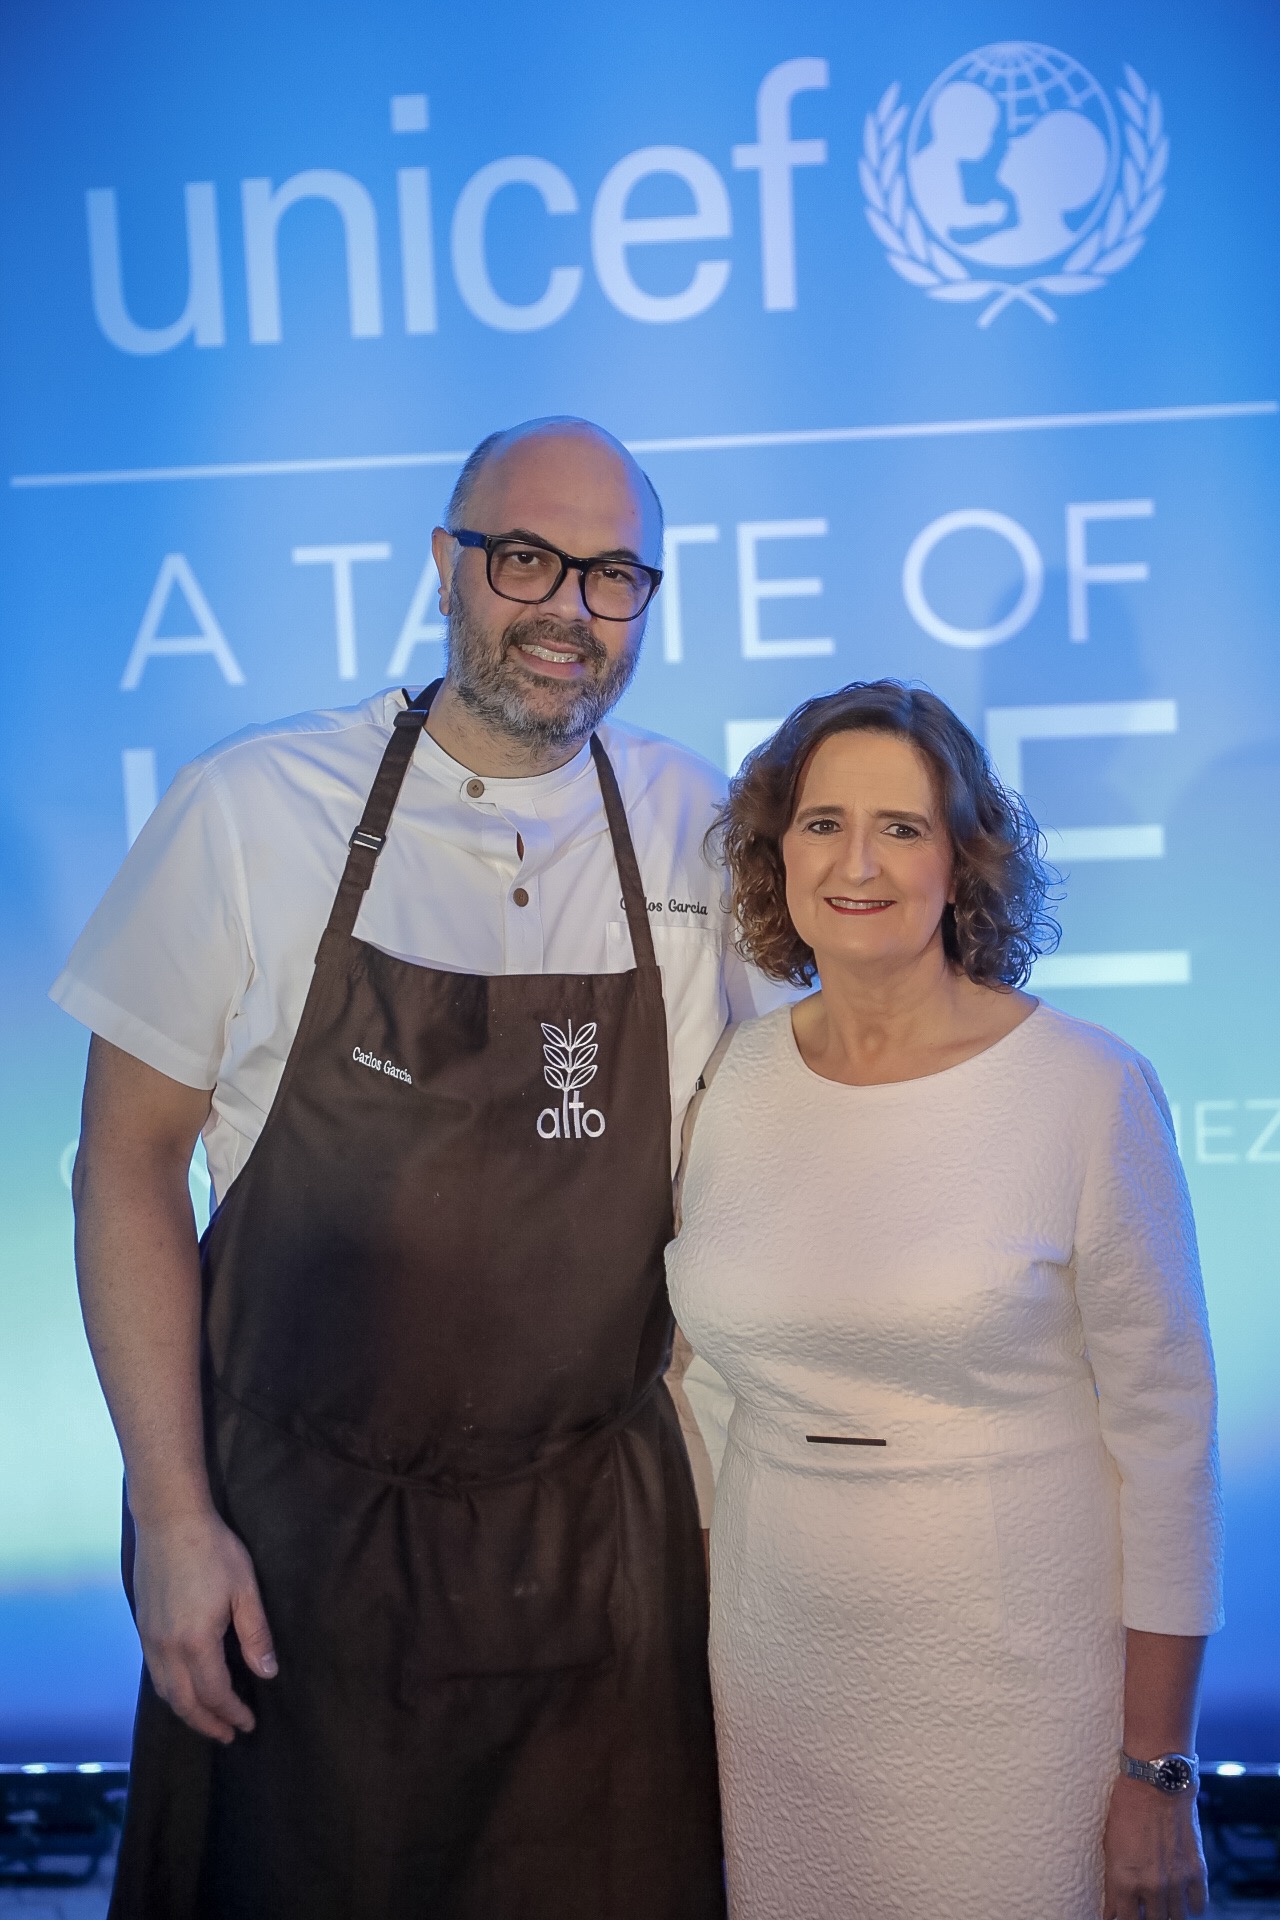 UNICEF: Cena Benéfica, una noche para dar esperanza a través de la gastronomía